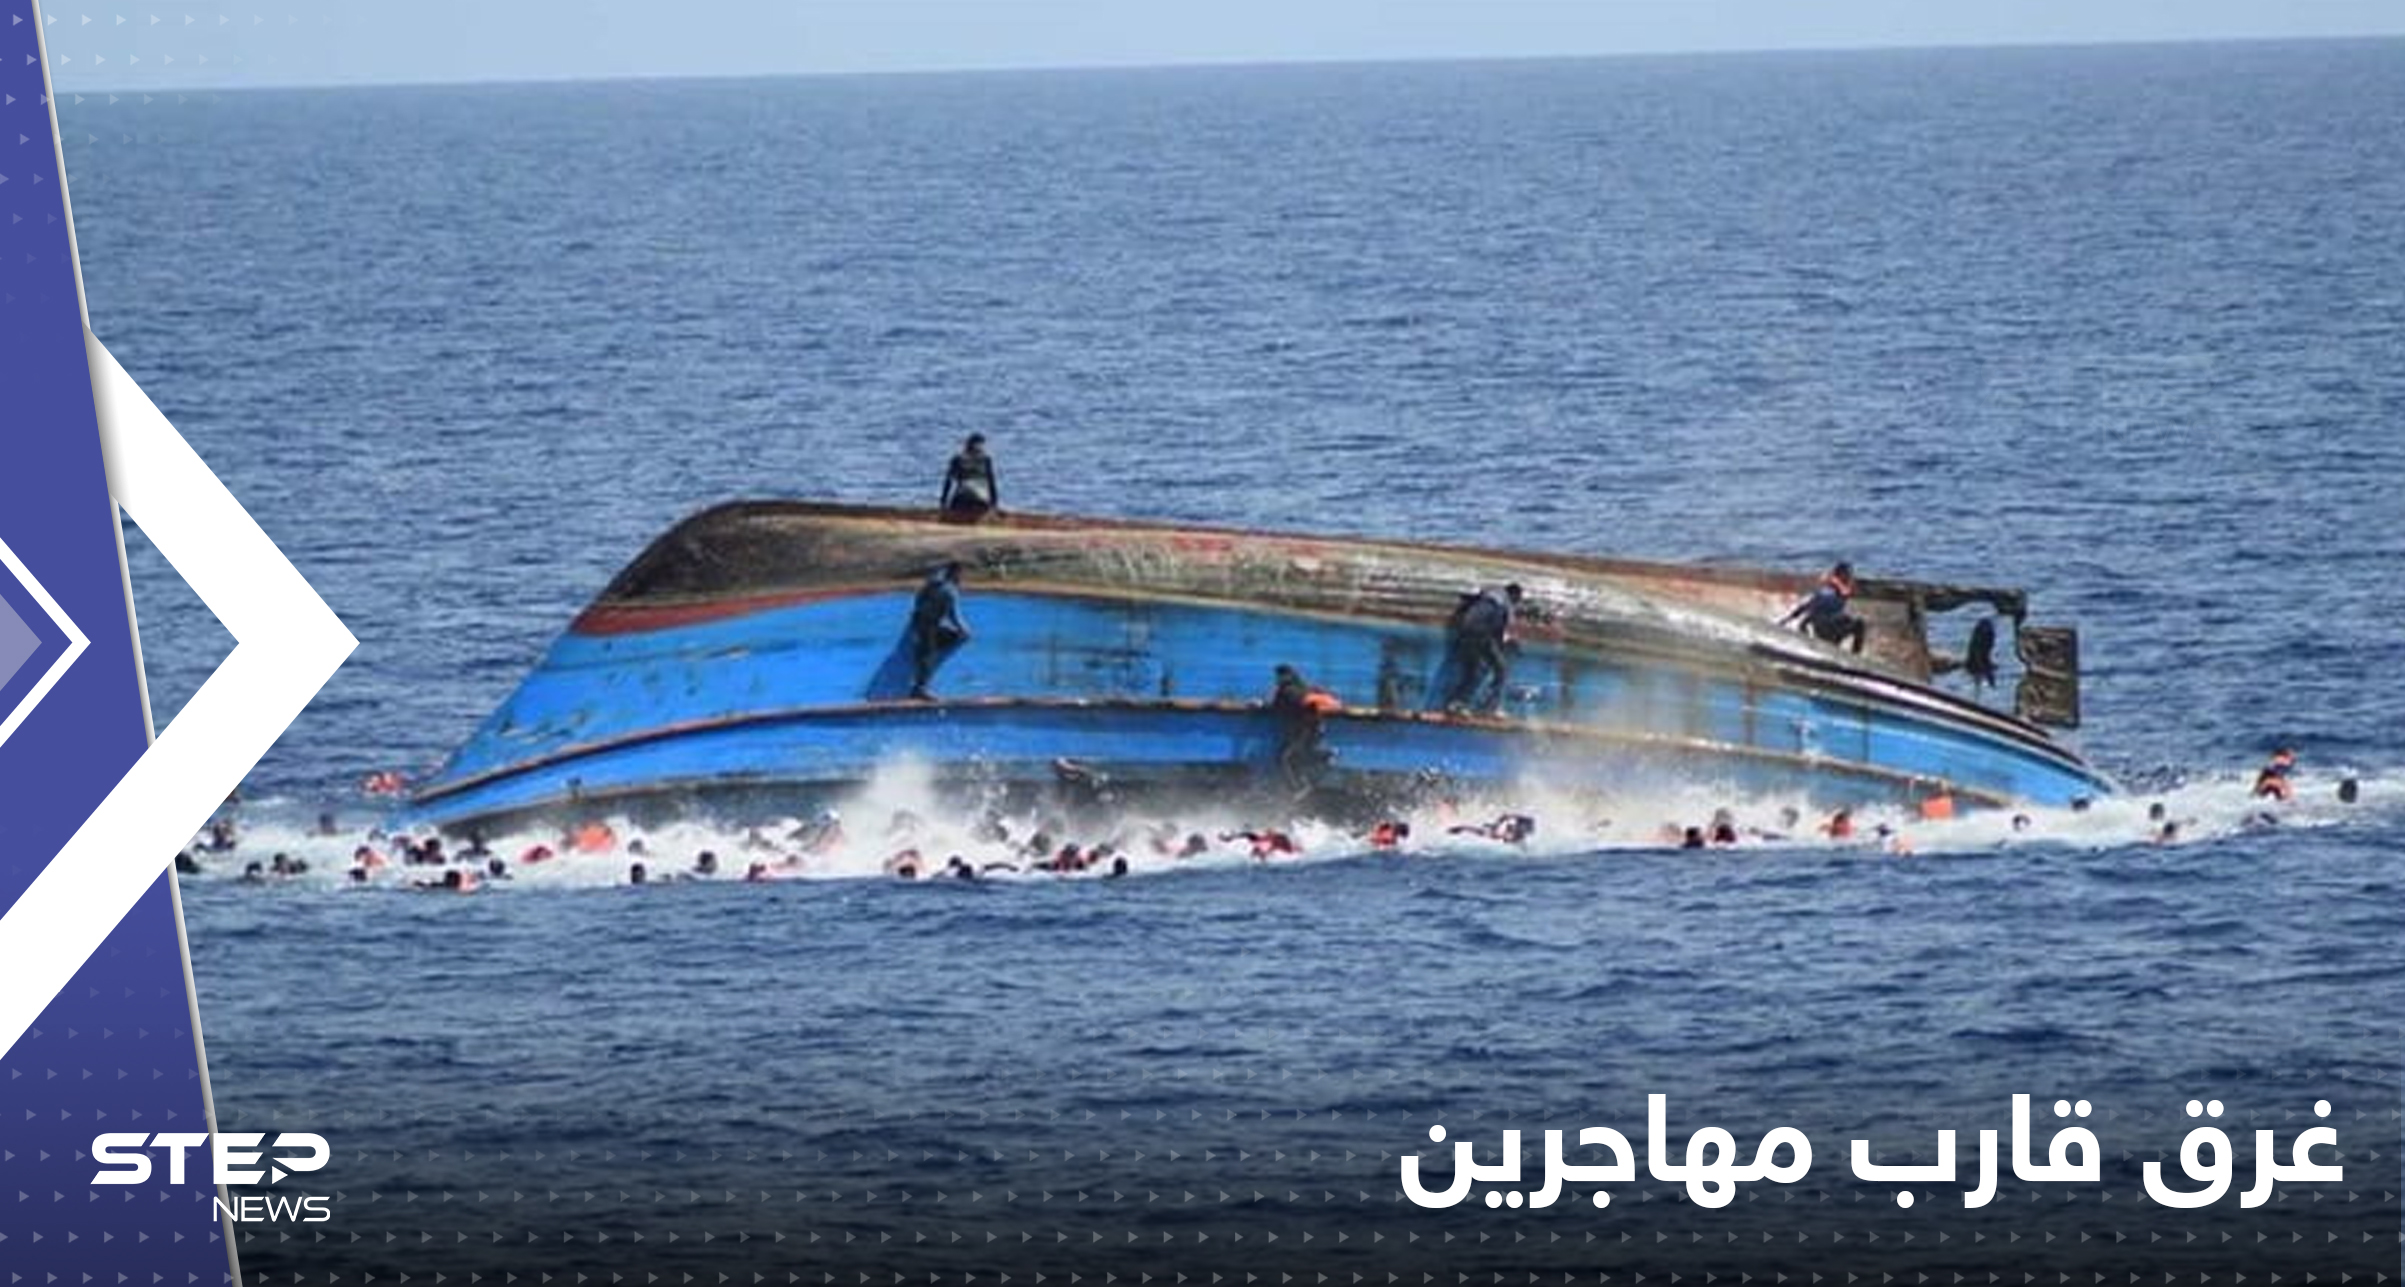 بعد مركب طرطوس.. غرق قارب مهاجرين قبالة سواحل جناق قلعة بتركيا وأنباء عن ضحايا